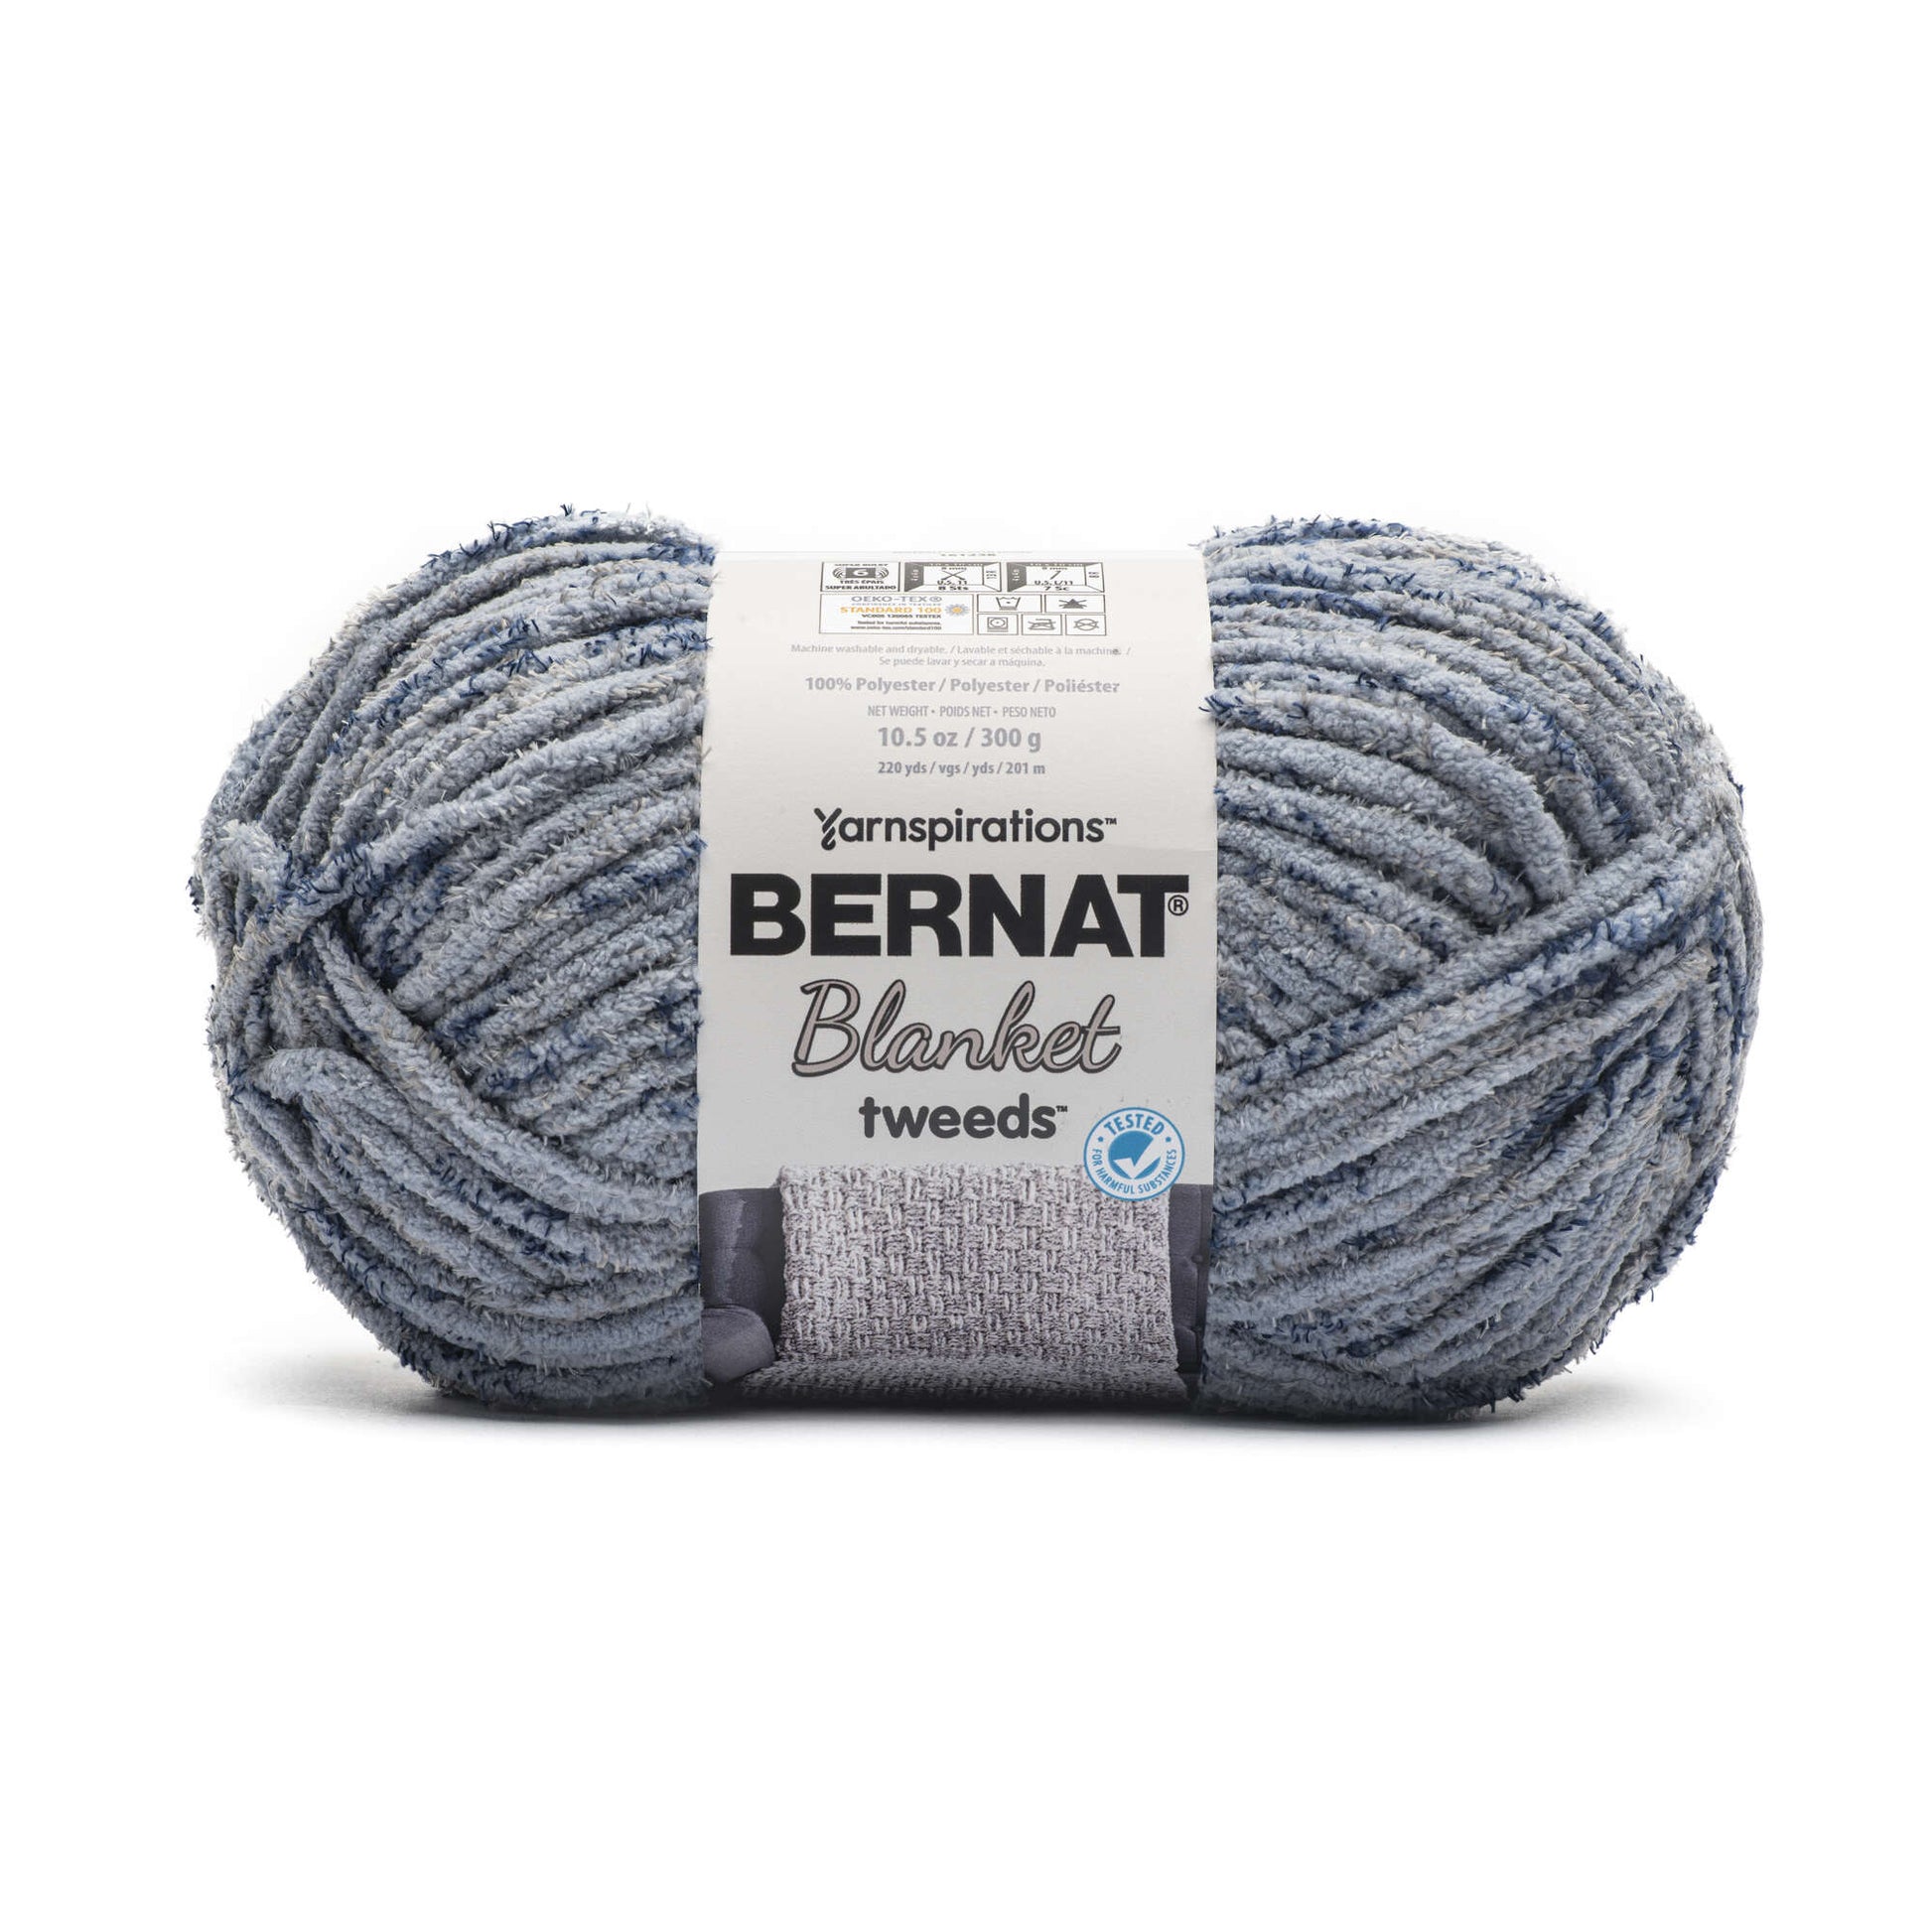 Bernat Blanket Tweeds Yarn (300g/10.5oz) Sea Tweed